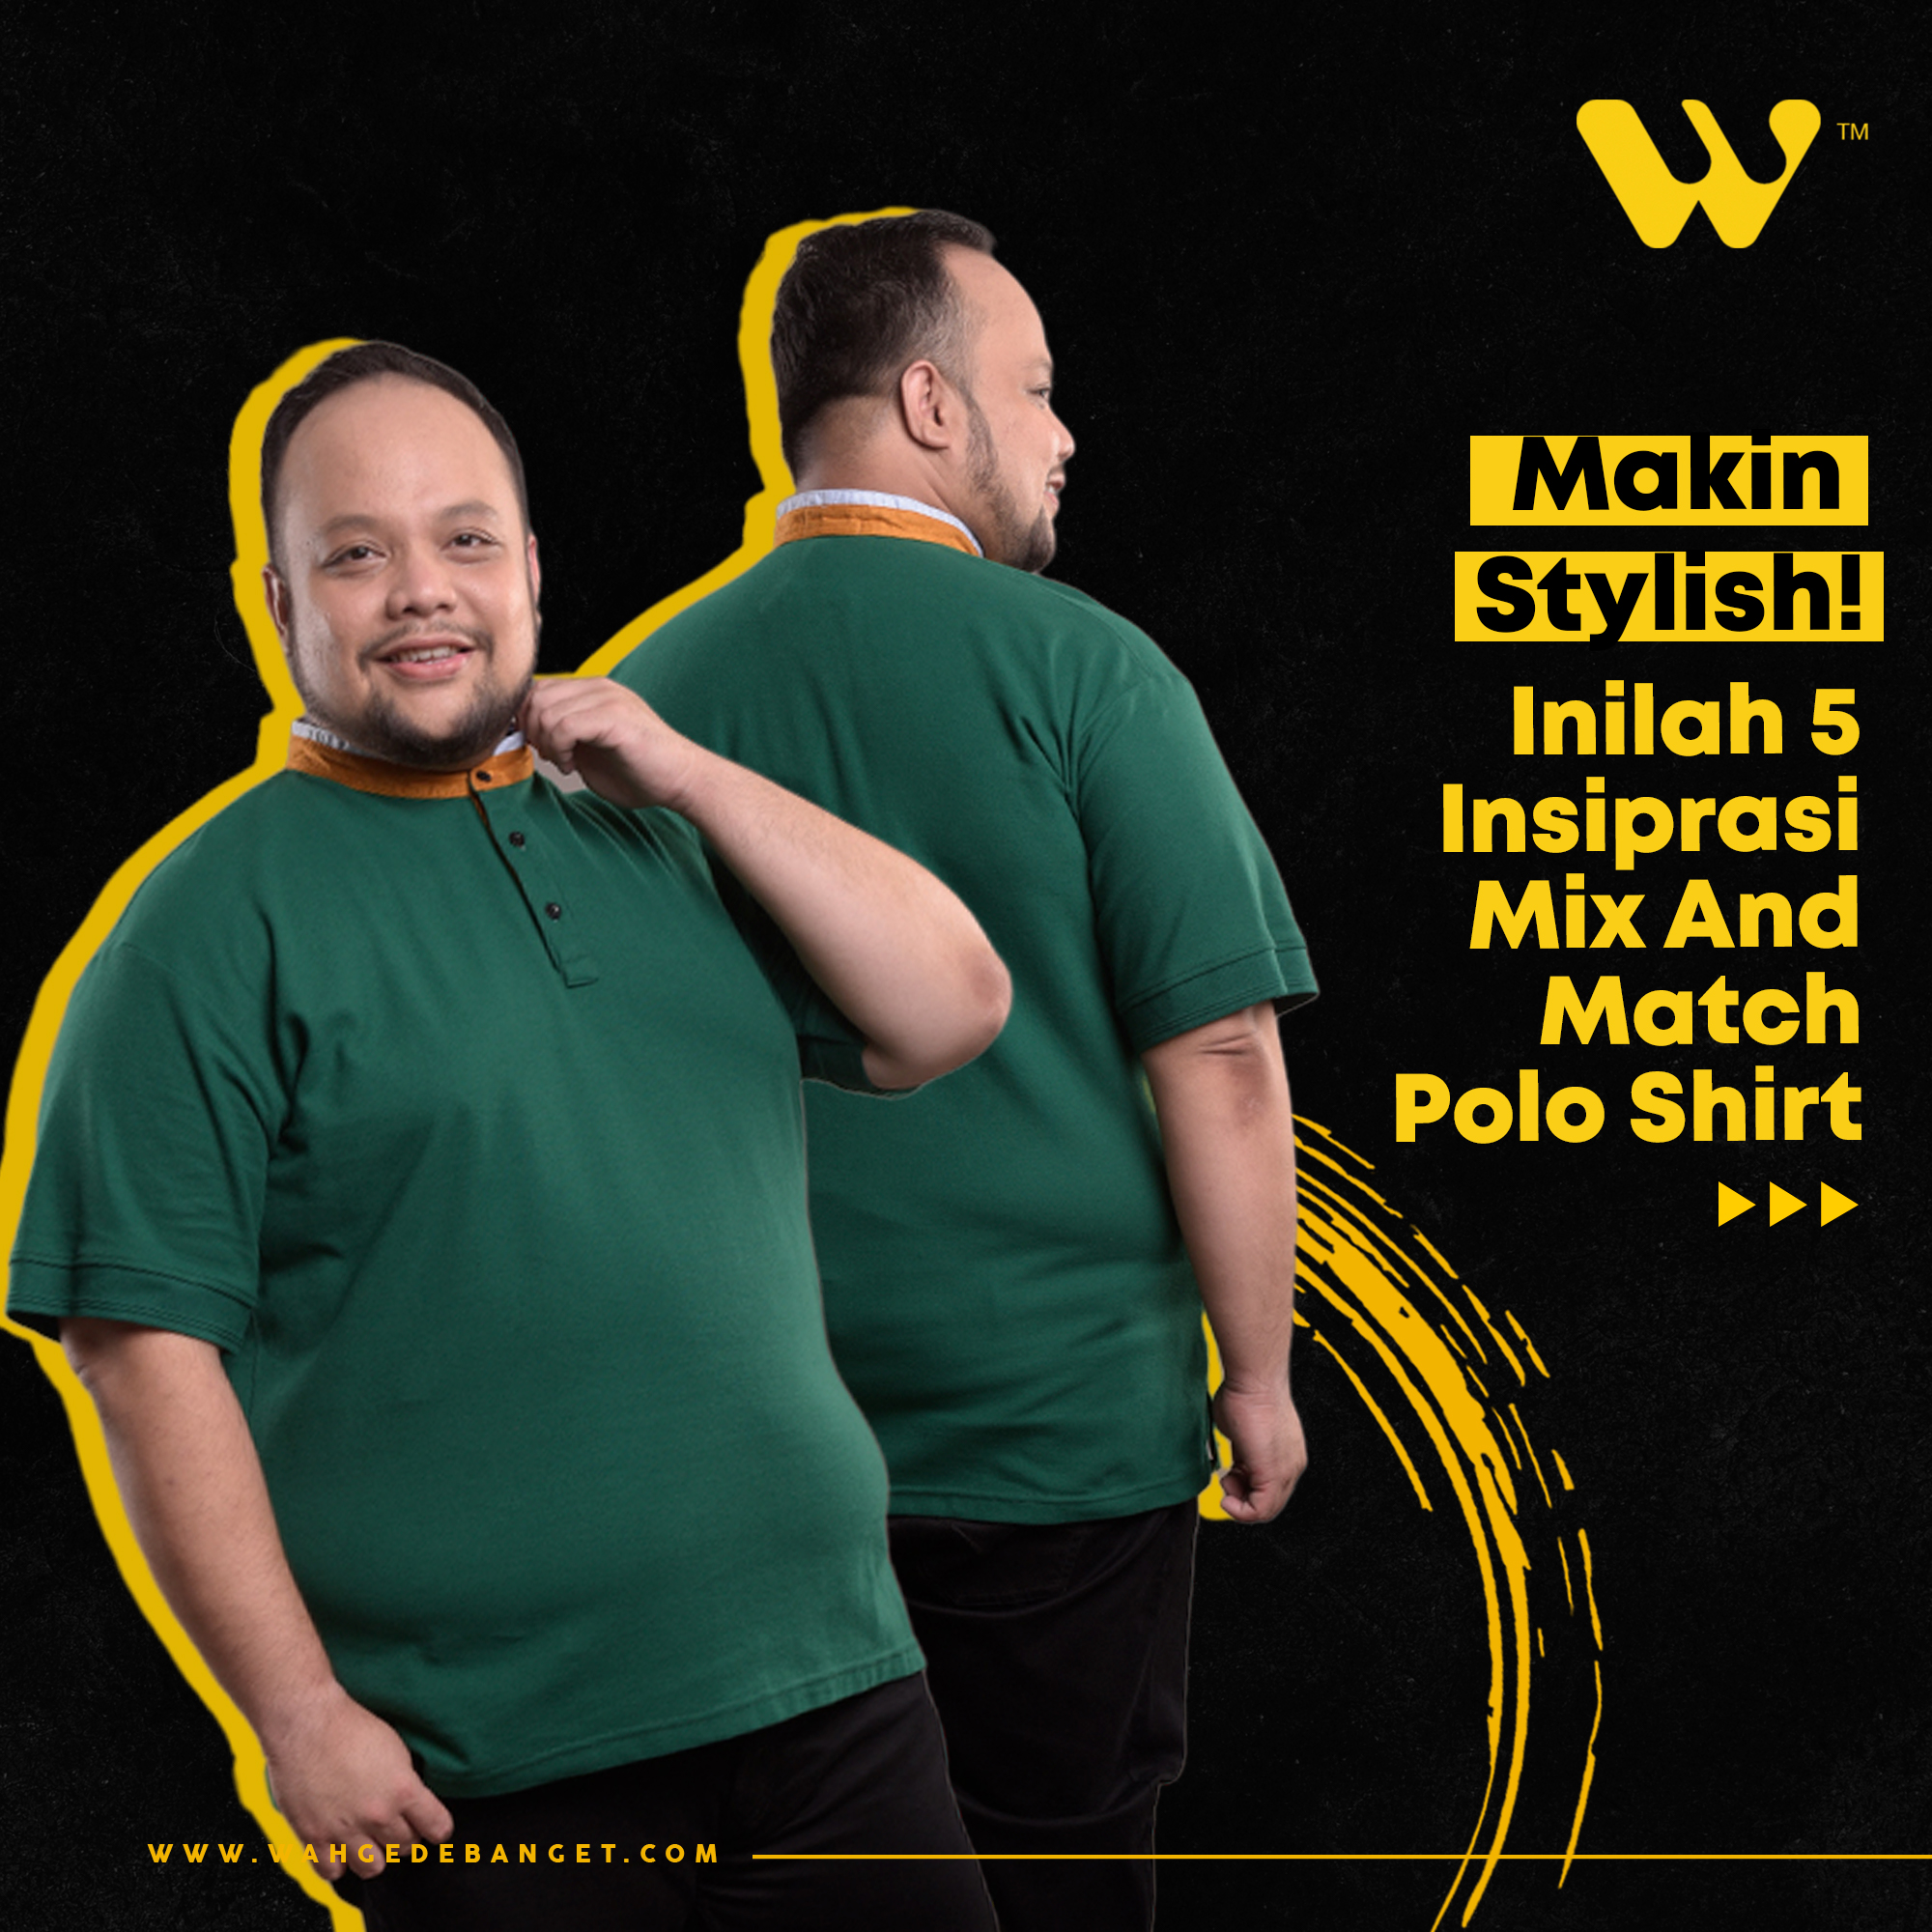 Makin stylish! Inilah 5 inspirasi mix and match polo shirt image